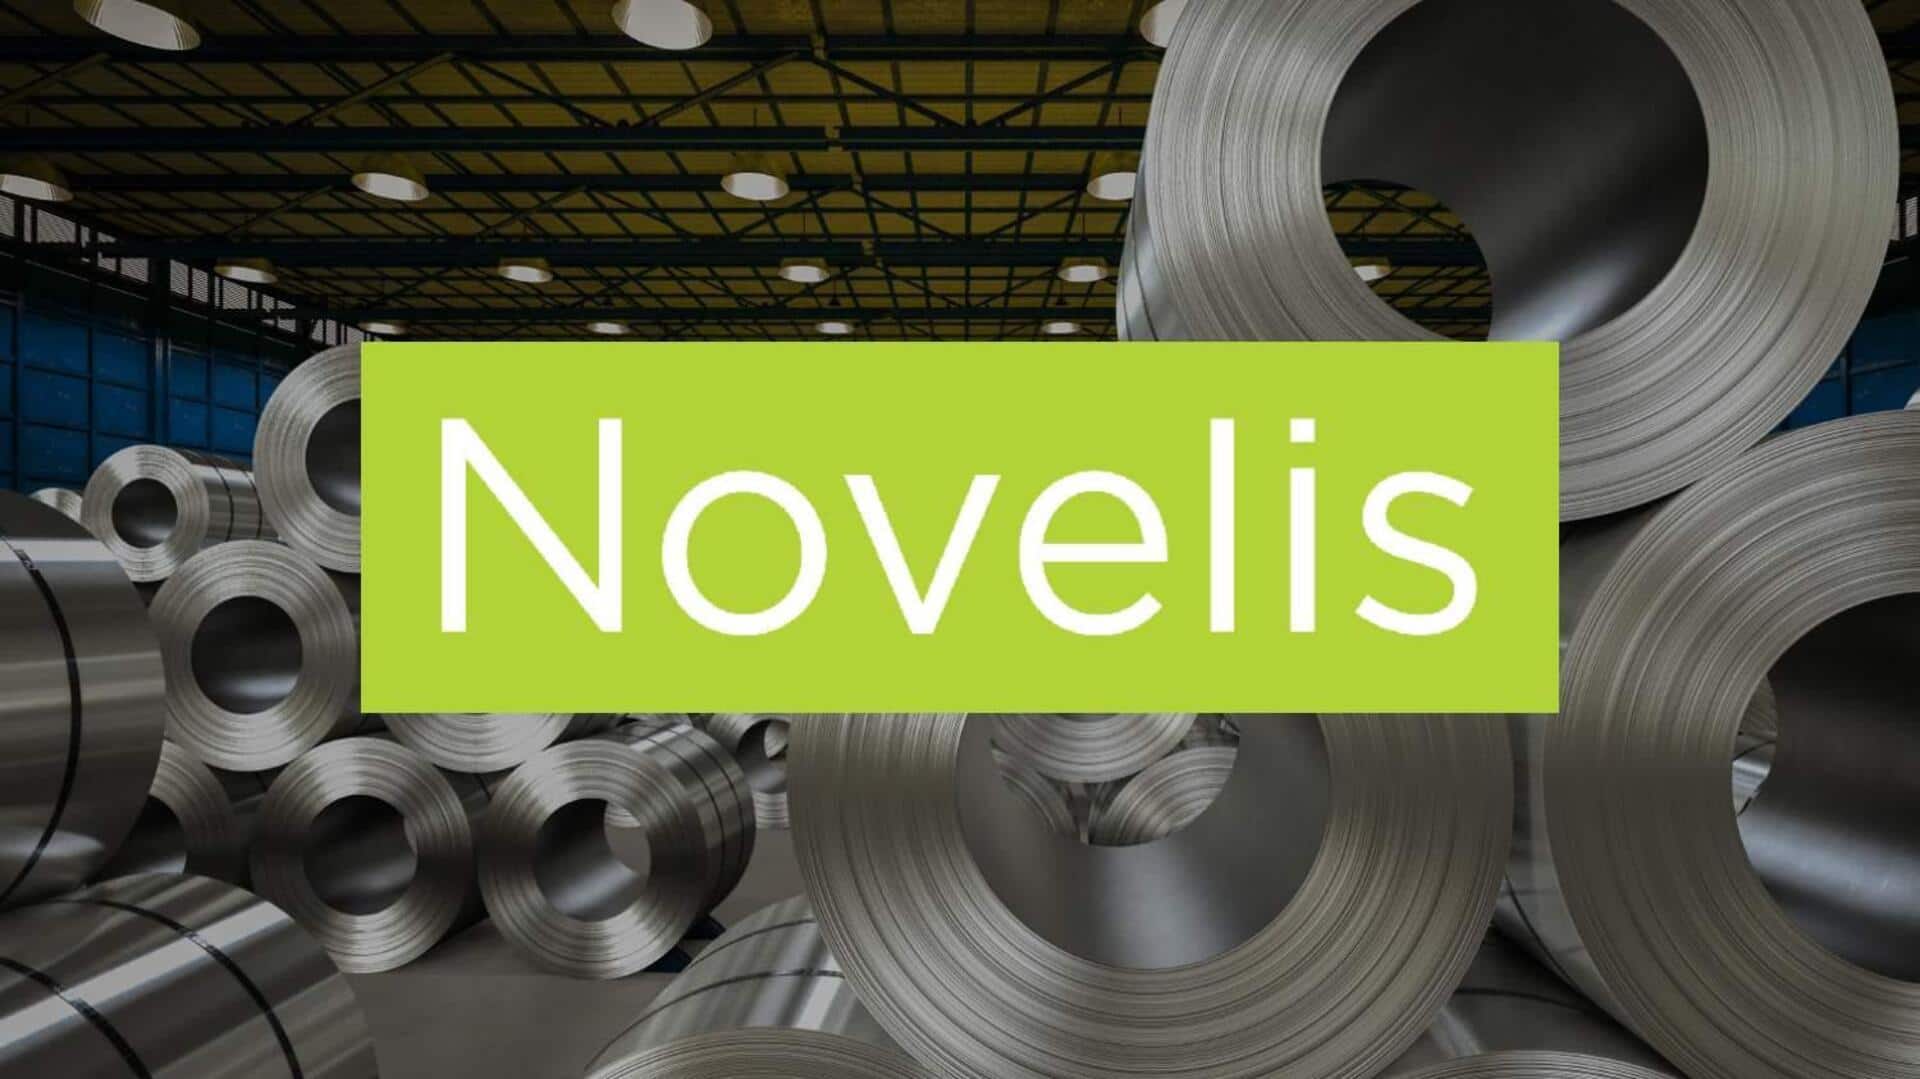 Hindalco Industries aims to raise $945 million through the Novelis US IPO